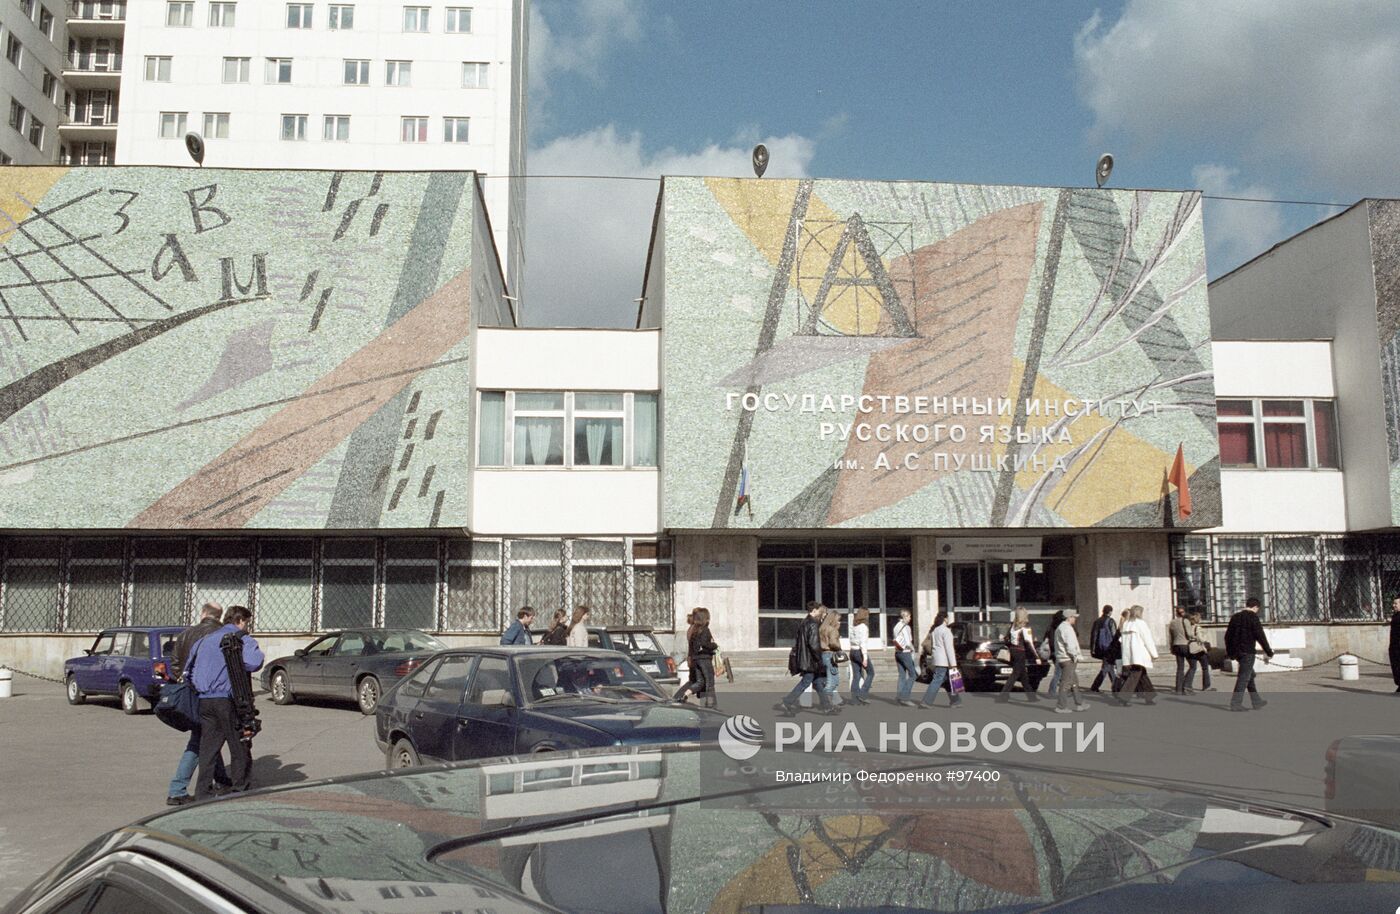 Государственный институт русского языка